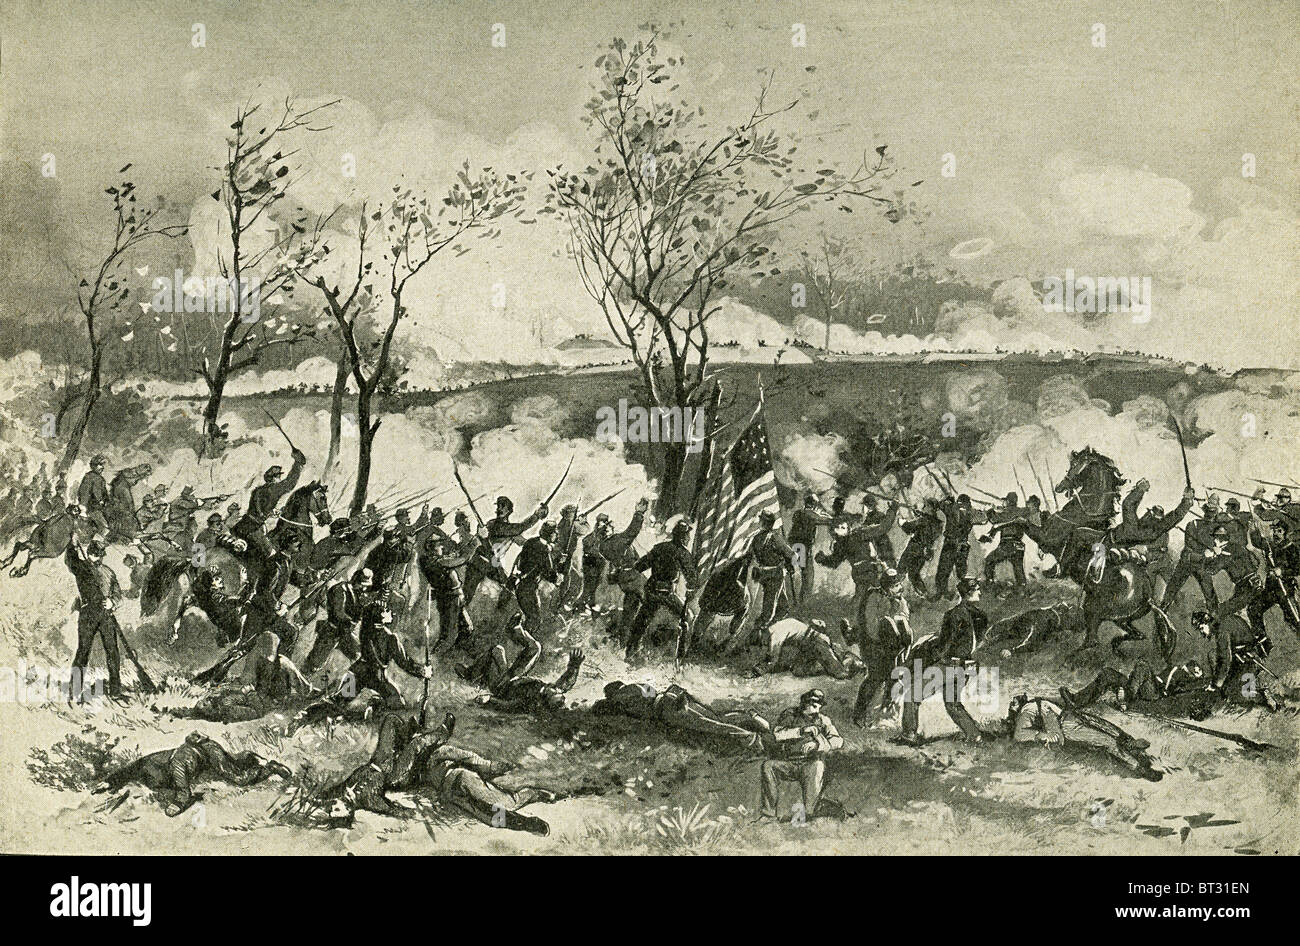 Cette illustration montre 1898 marche en avant des troupes de l'Union à Fort Donelson et attaquer des confédérés. Banque D'Images